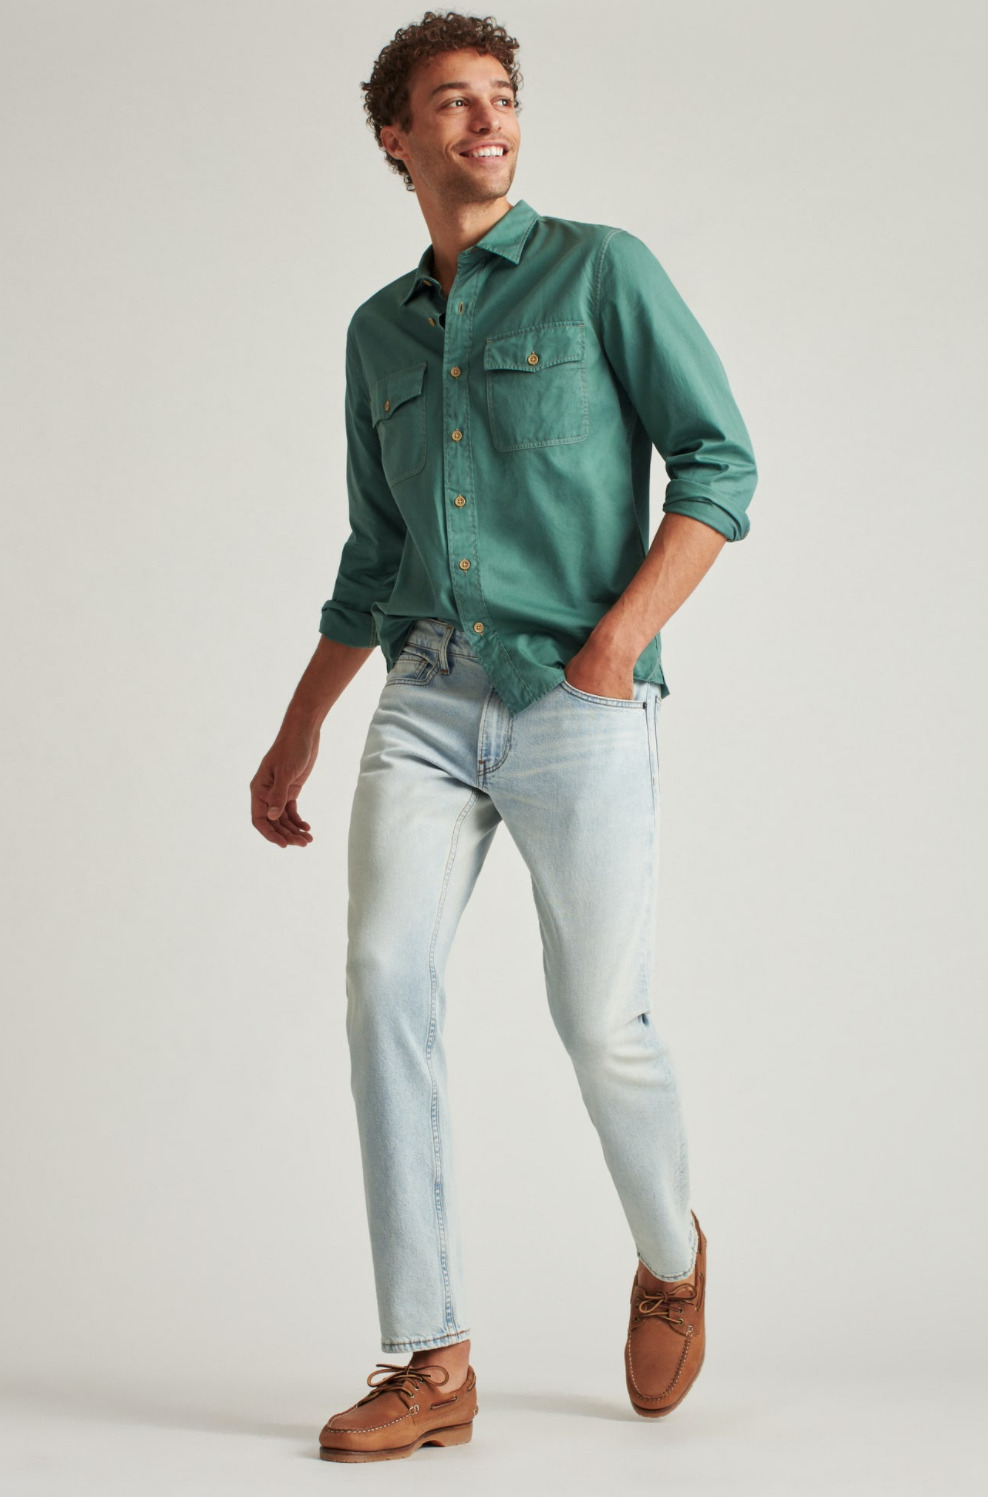 The Spring Denim Edit, spring jeans trends, lightwash jeans